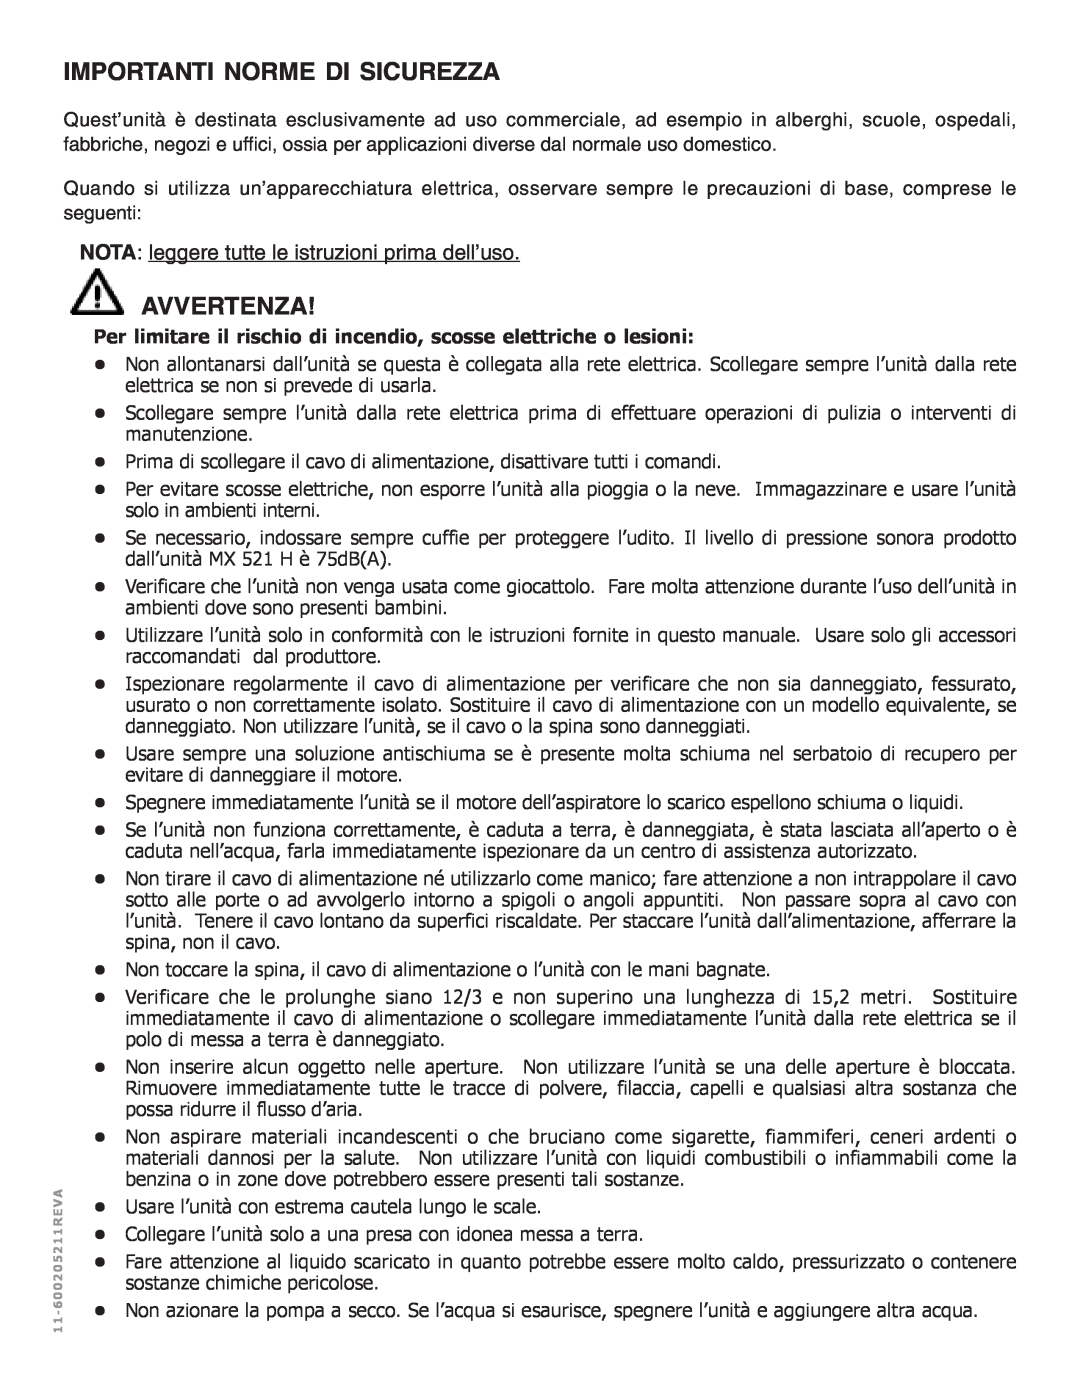 Nilfisk-ALTO MX 521 H manual Importanti Norme Di Sicurezza, Avvertenza, NOTA leggere tutte le istruzioni prima dell’uso 